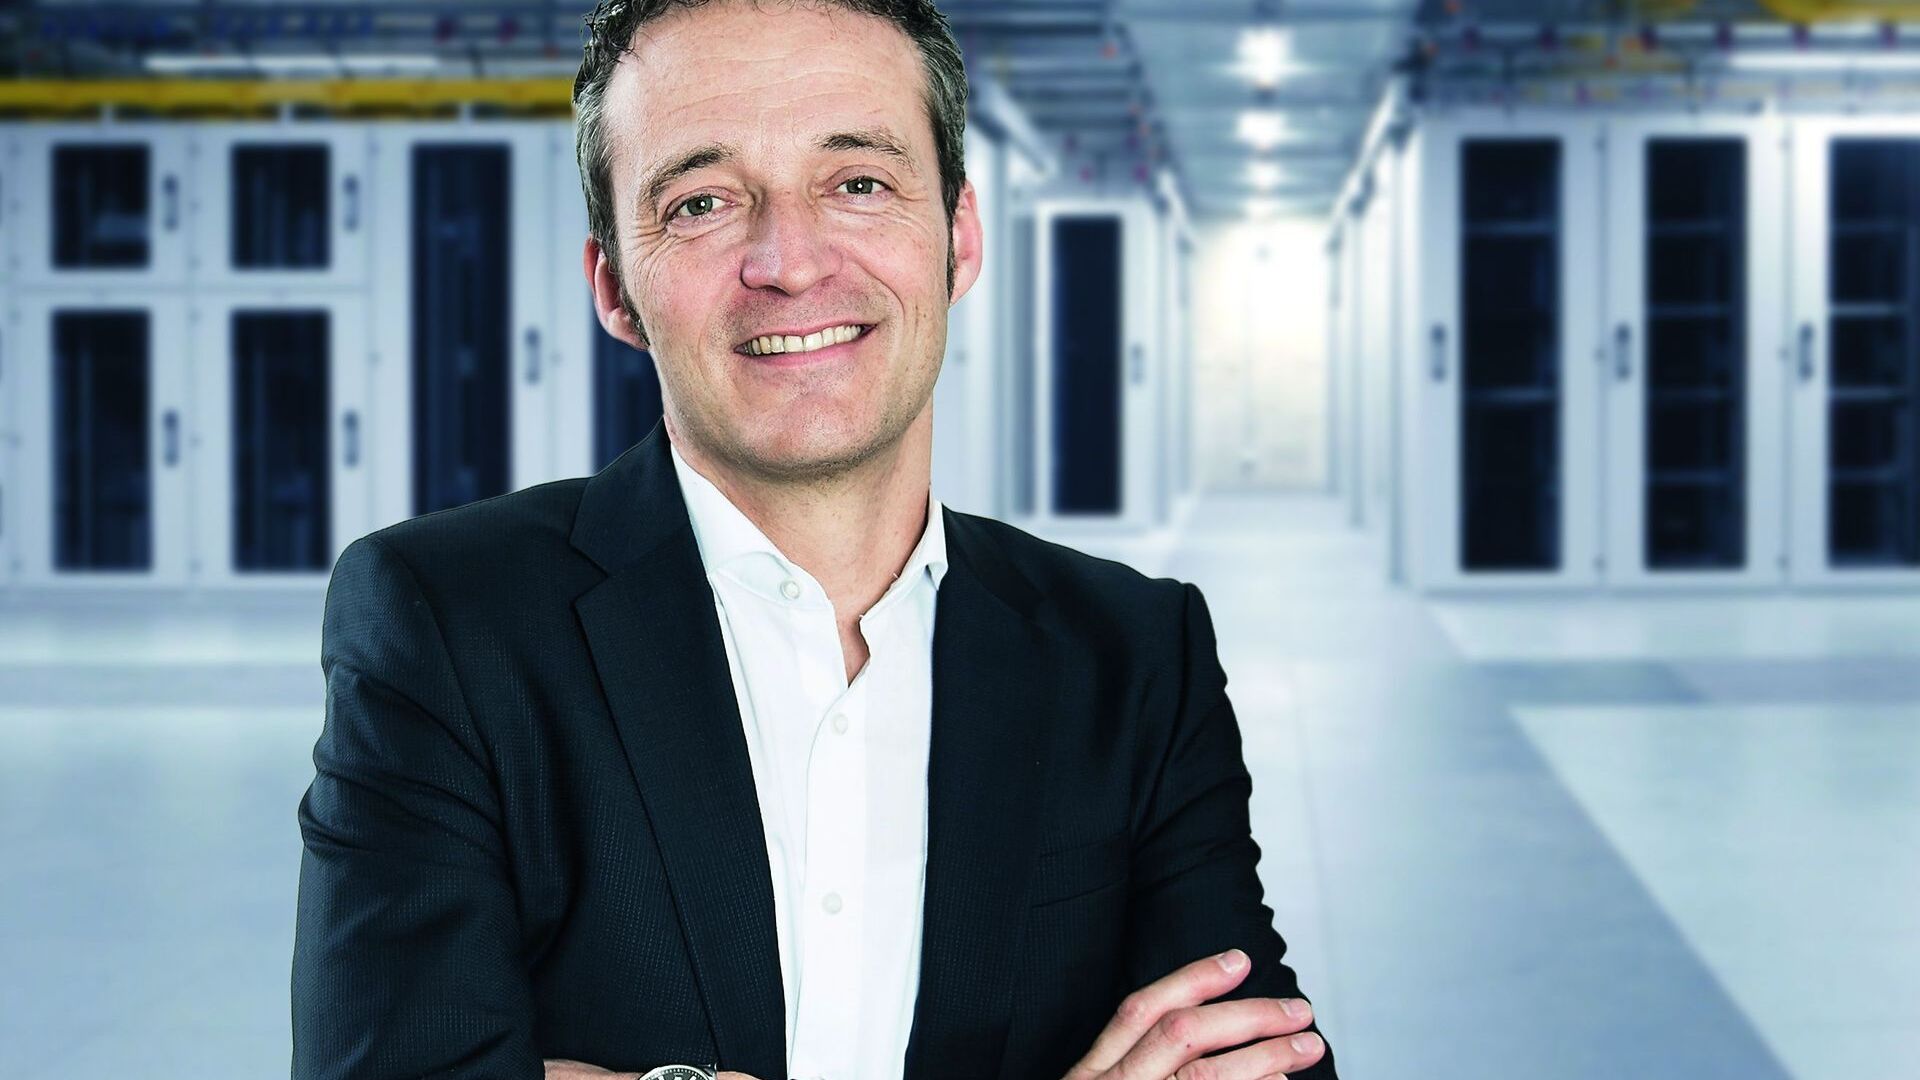 Andreas Schwizer เป็นหัวหน้าแผนก ICT และสมาชิกคณะกรรมการบริหารของ SAK (St. Gallisch-Appenzellische Kraftwerke AG)